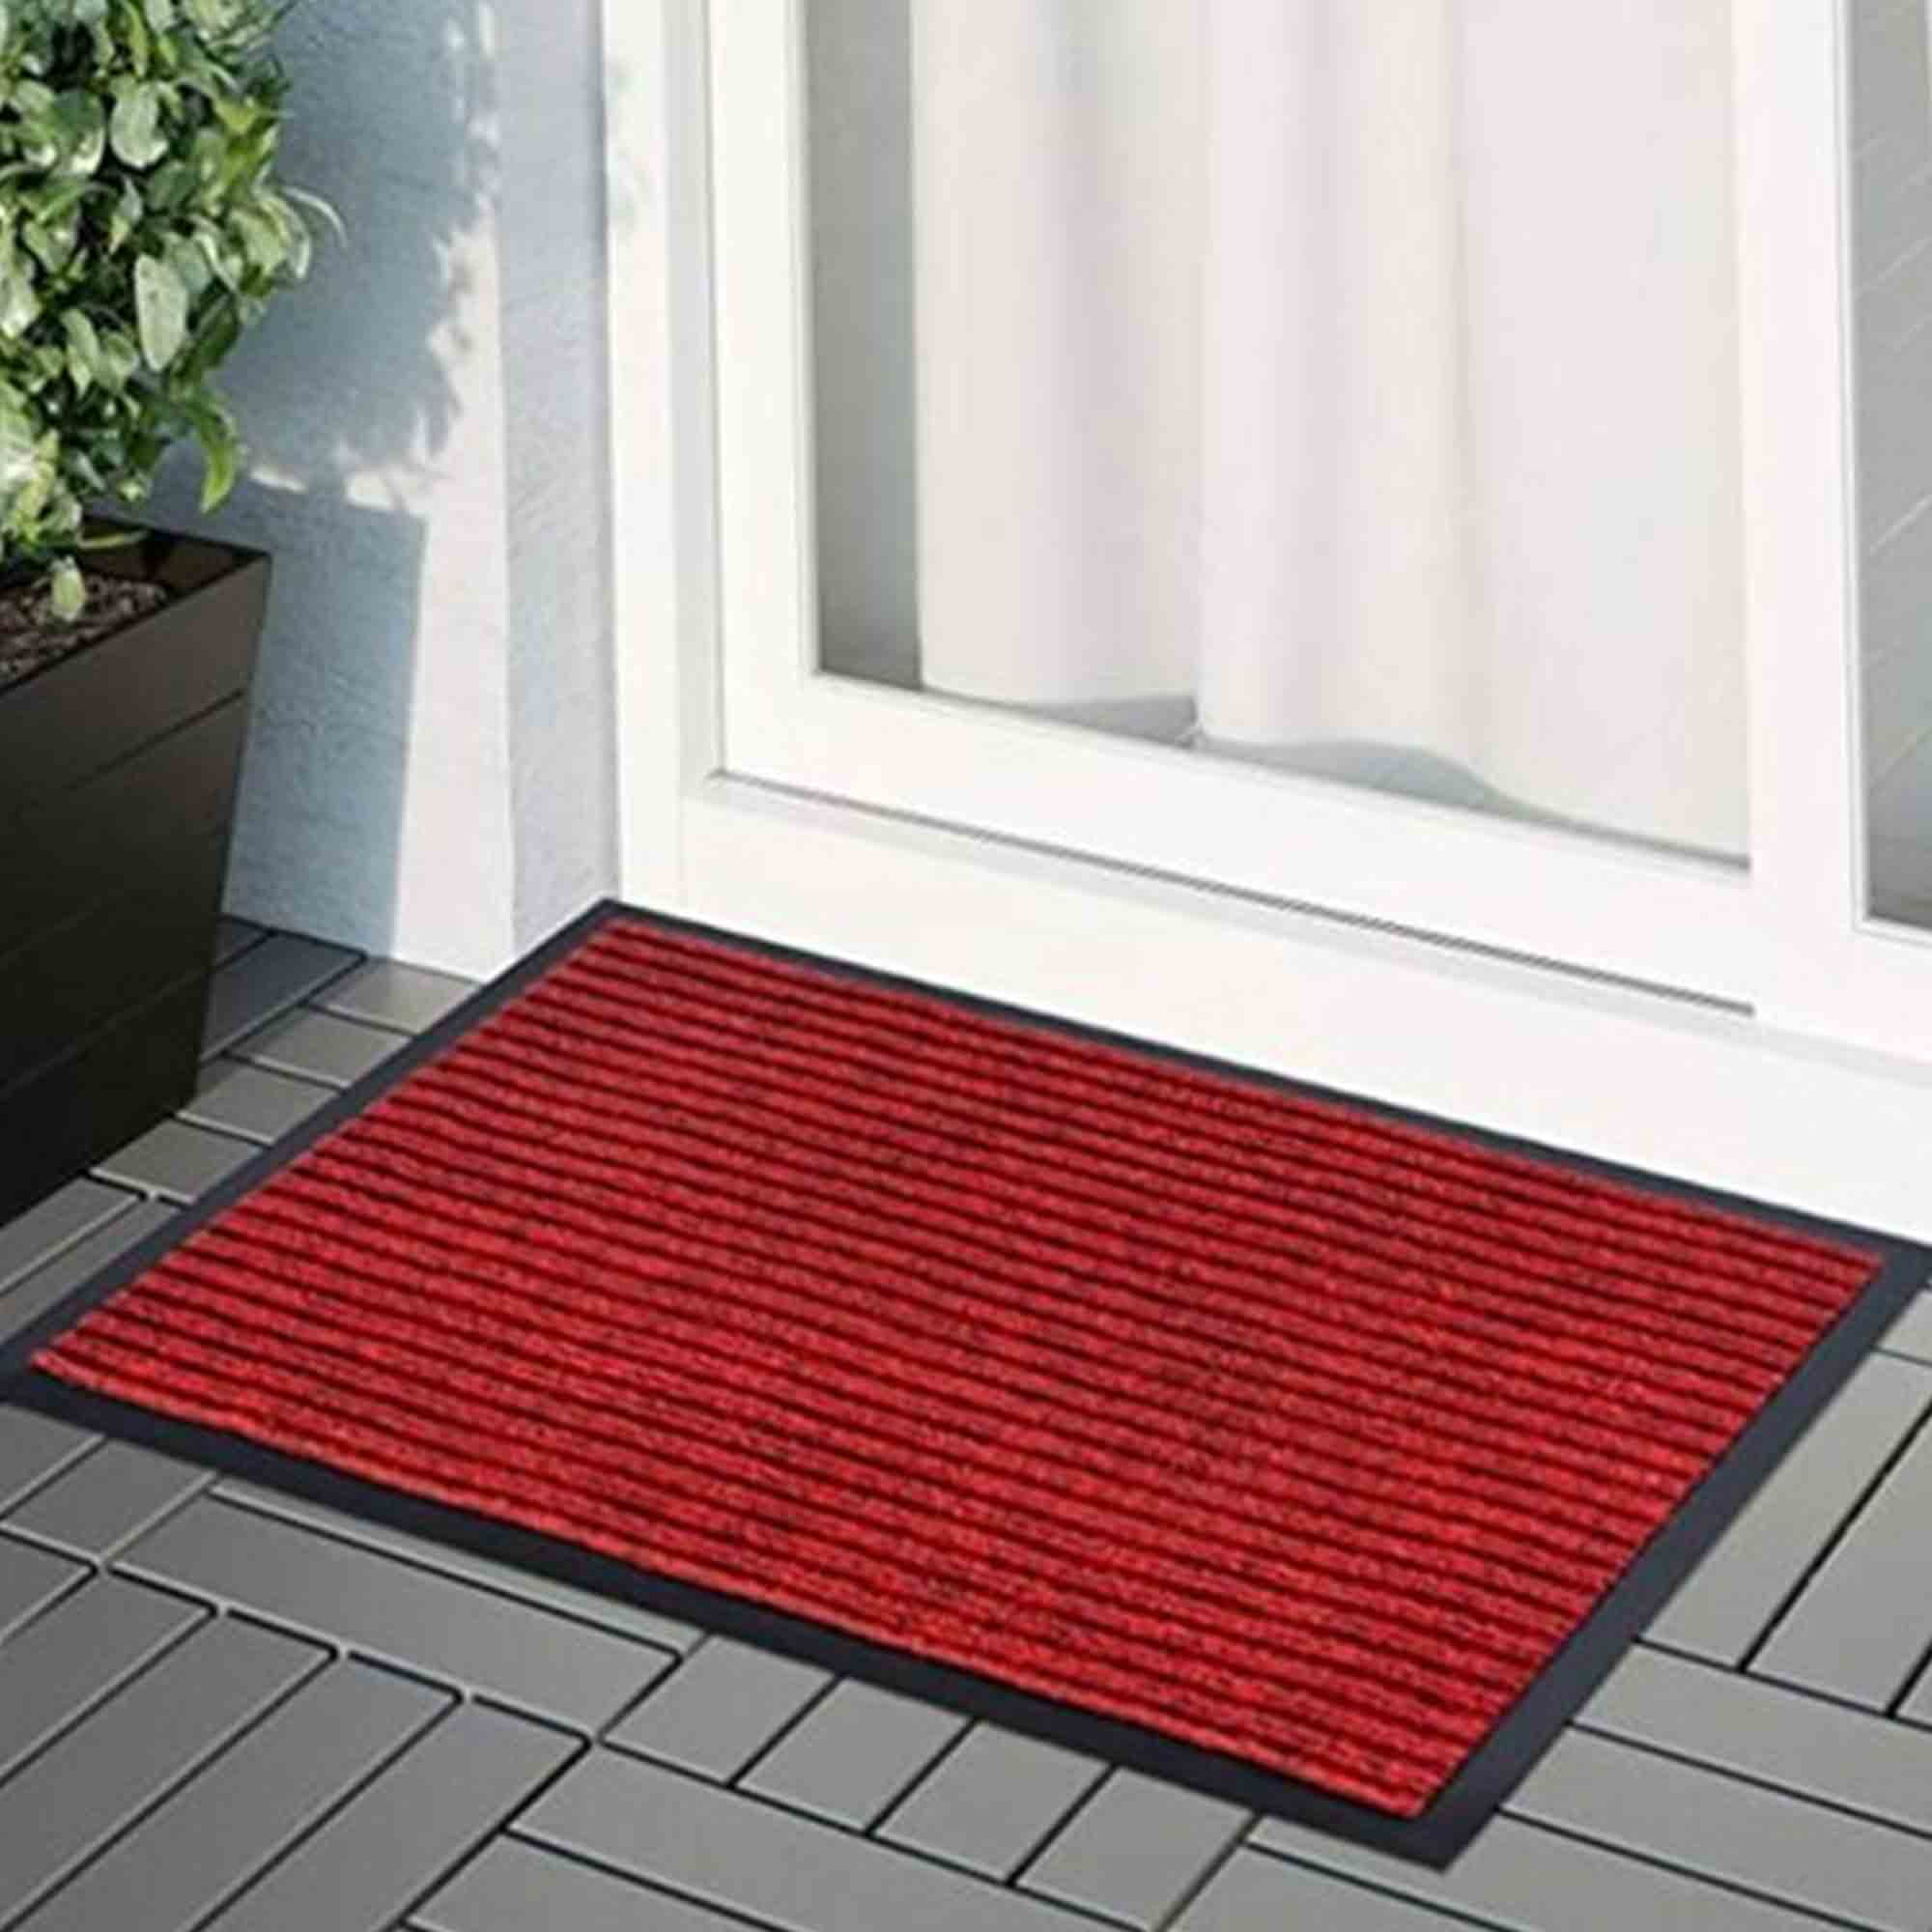 Doormat Funny Cats Welcome Rug Non-Slip Home Kitchen Floor Mat Bedroom Dark Grey, 30x20 inches 